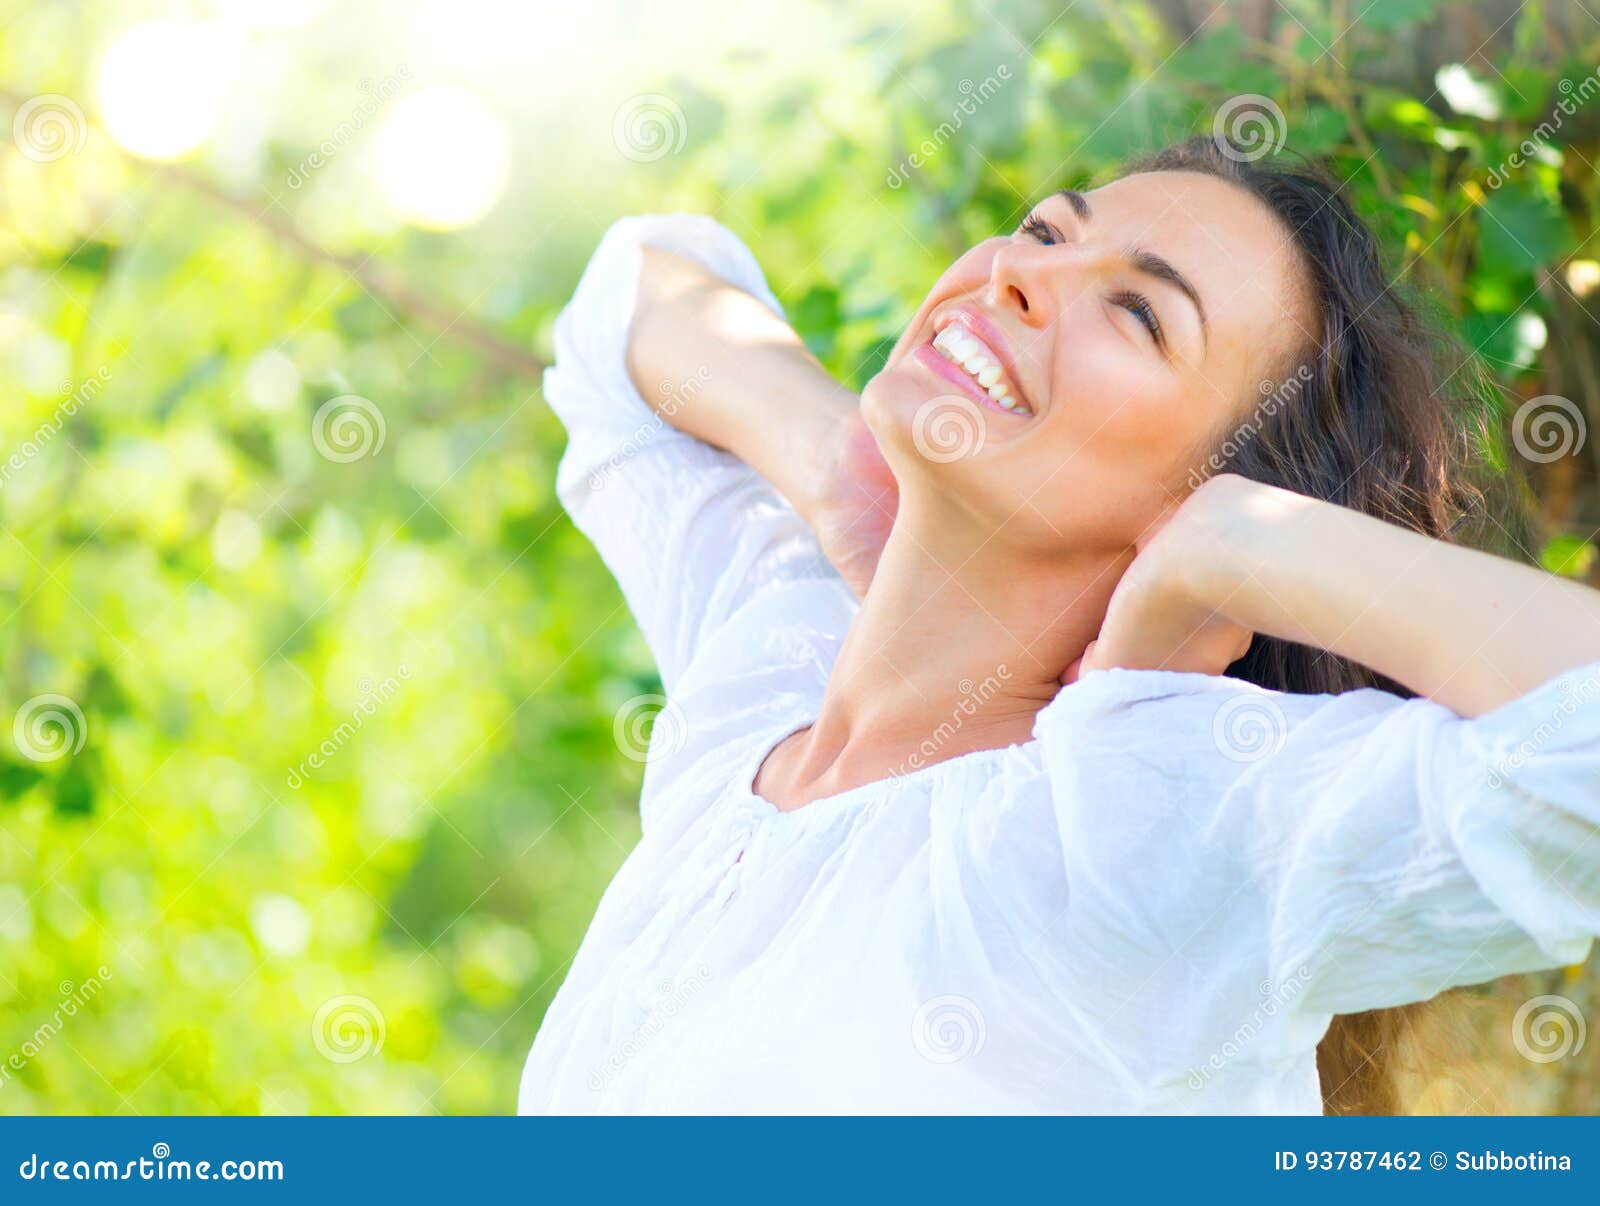 beauty young woman enjoying nature